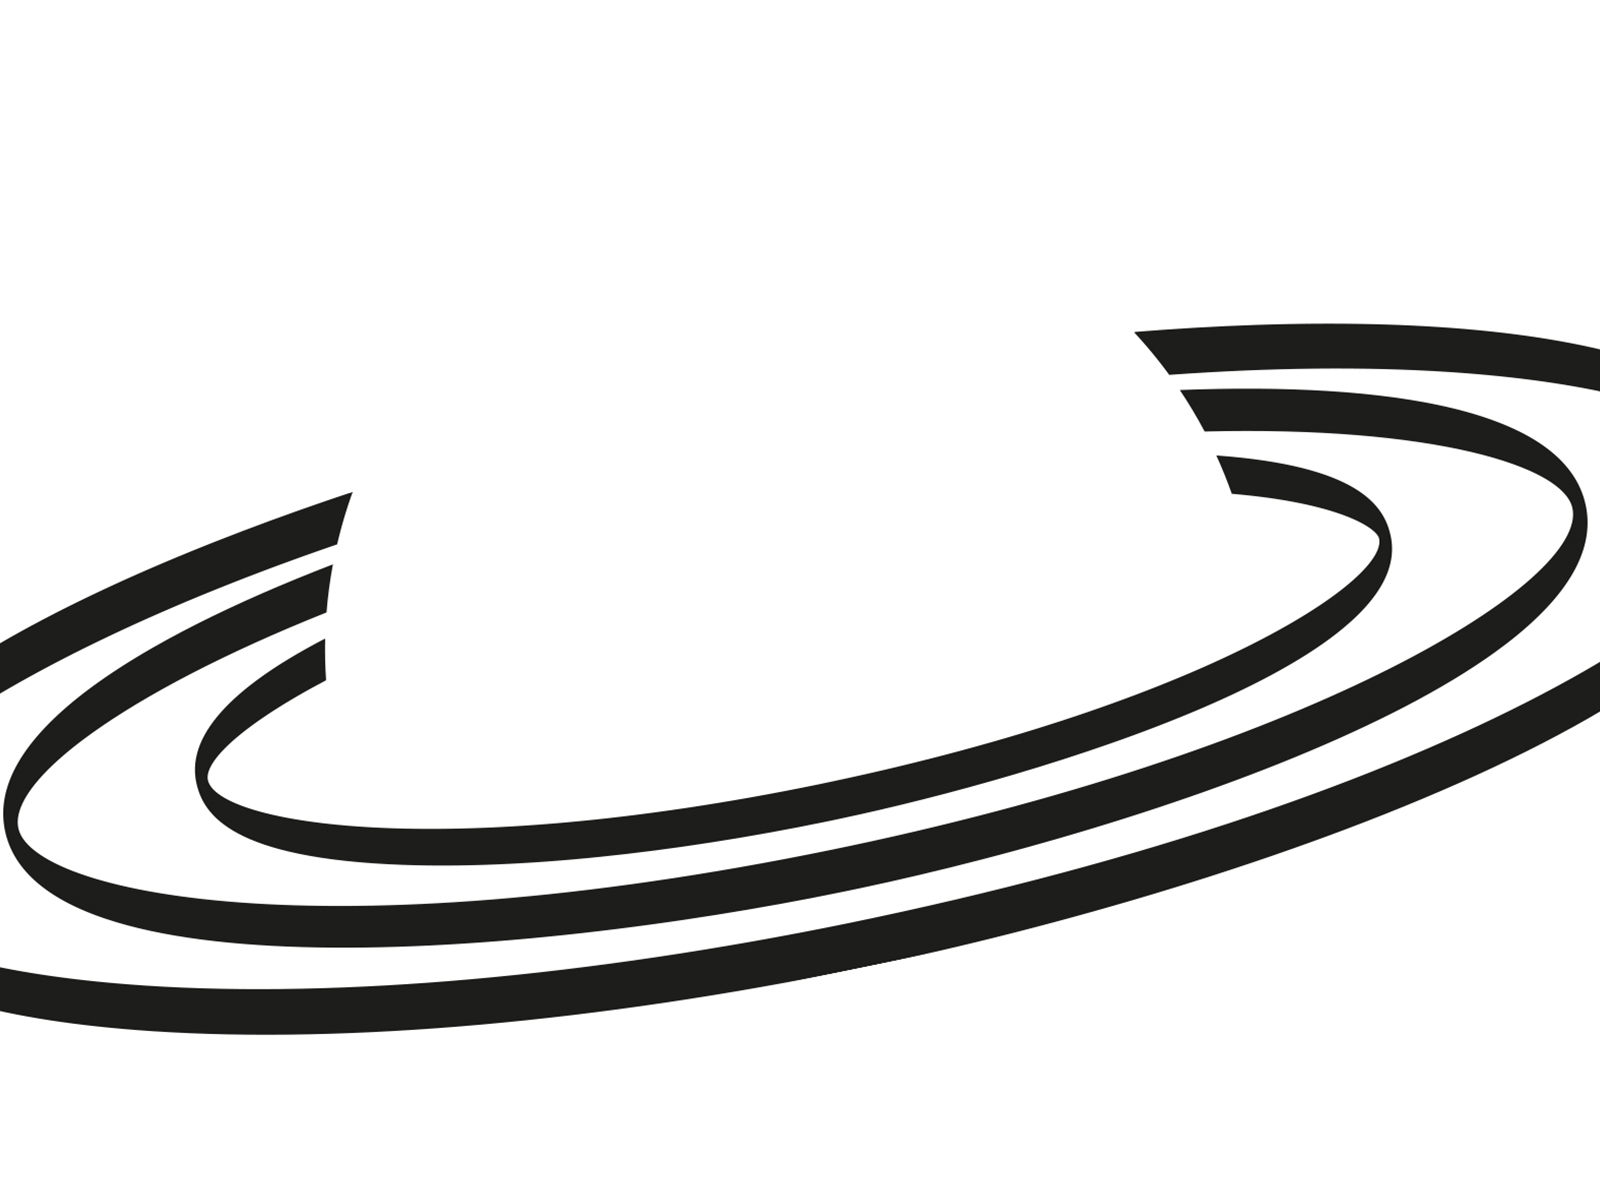 planet B logo visual